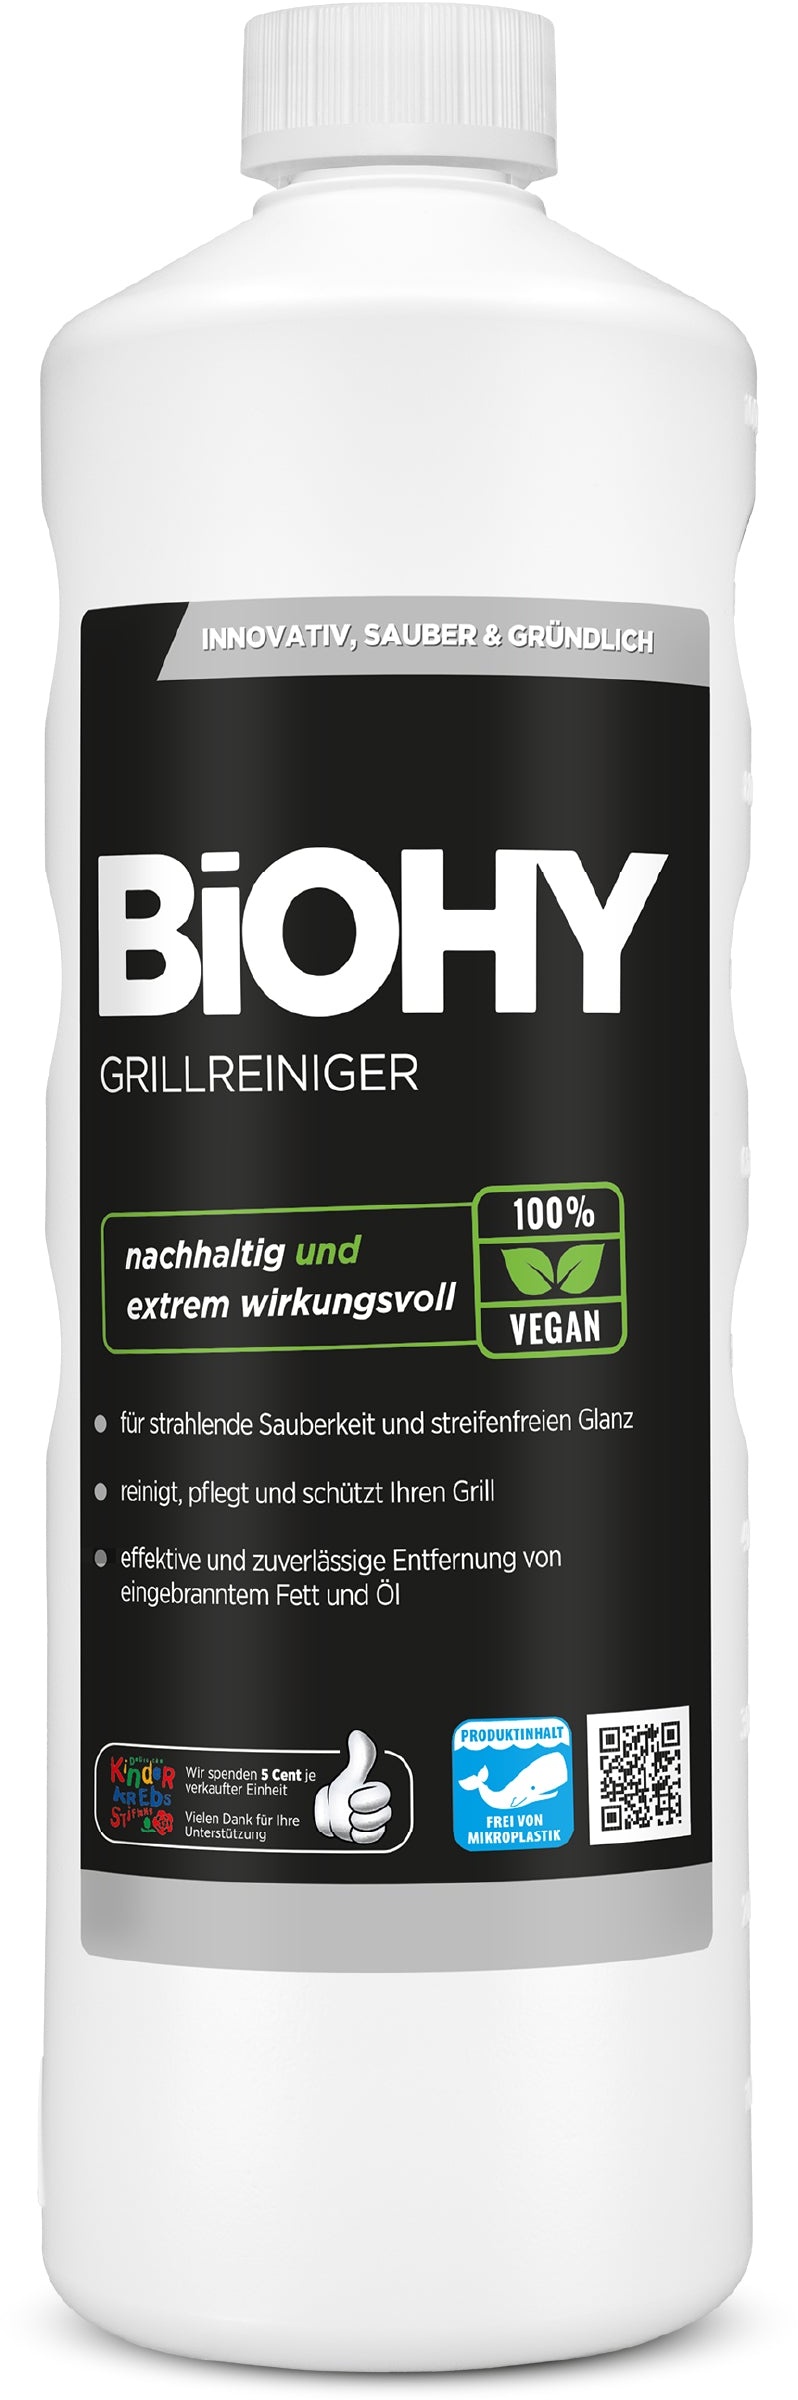 BiOHY Grillreiniger, Gasgrill Reiniger, BBQ Reiniger, Grillrost Reiniger 1 x 1 Liter Flasche